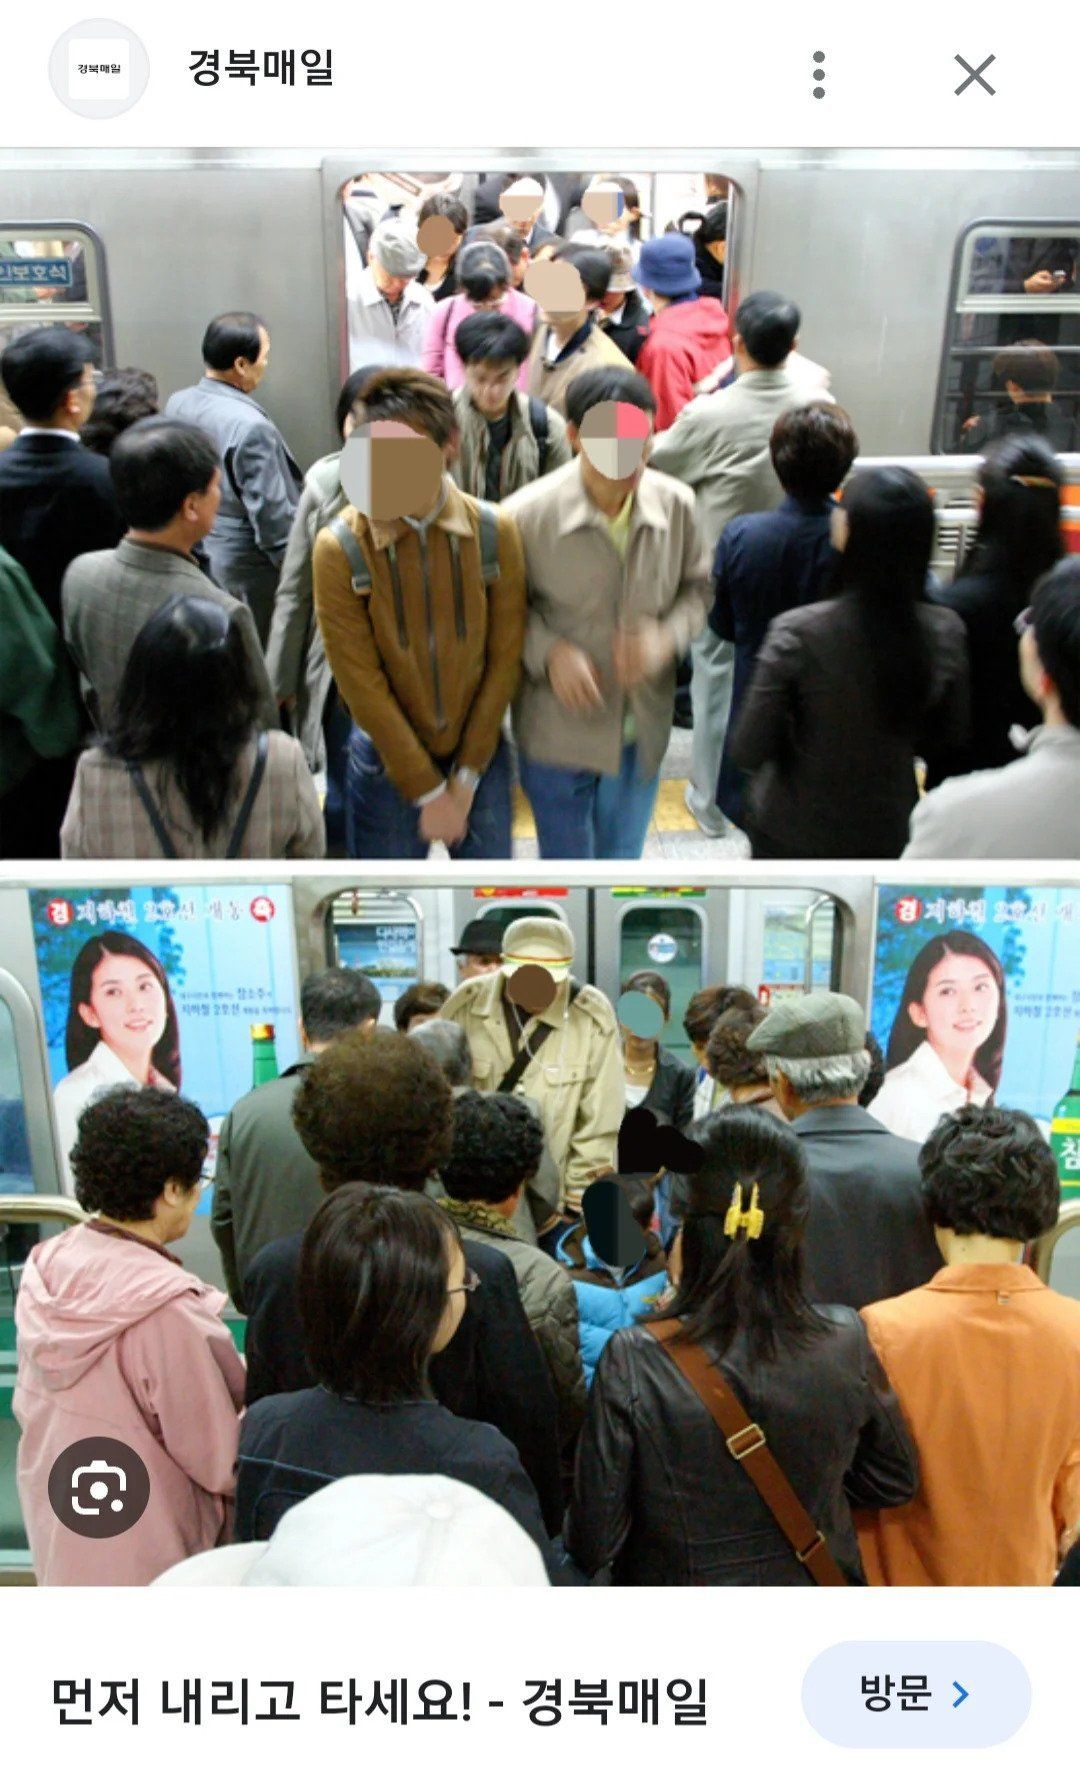 지하철에서 의외로 한국인에게 많이 보이는 병.jpg.jpg